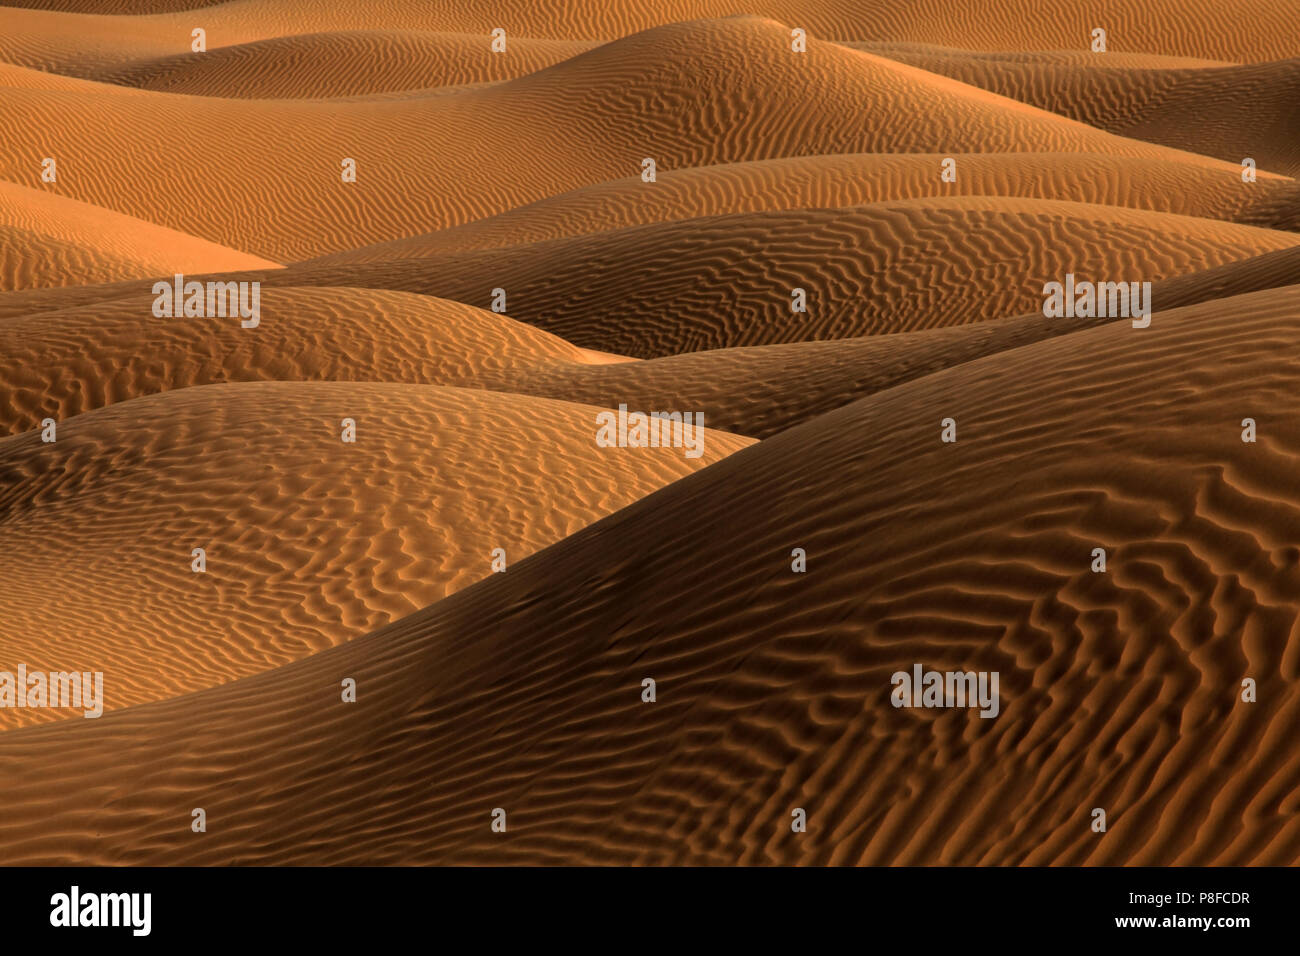 Las dunas de arena en el desierto, Arabia Saudita Foto de stock